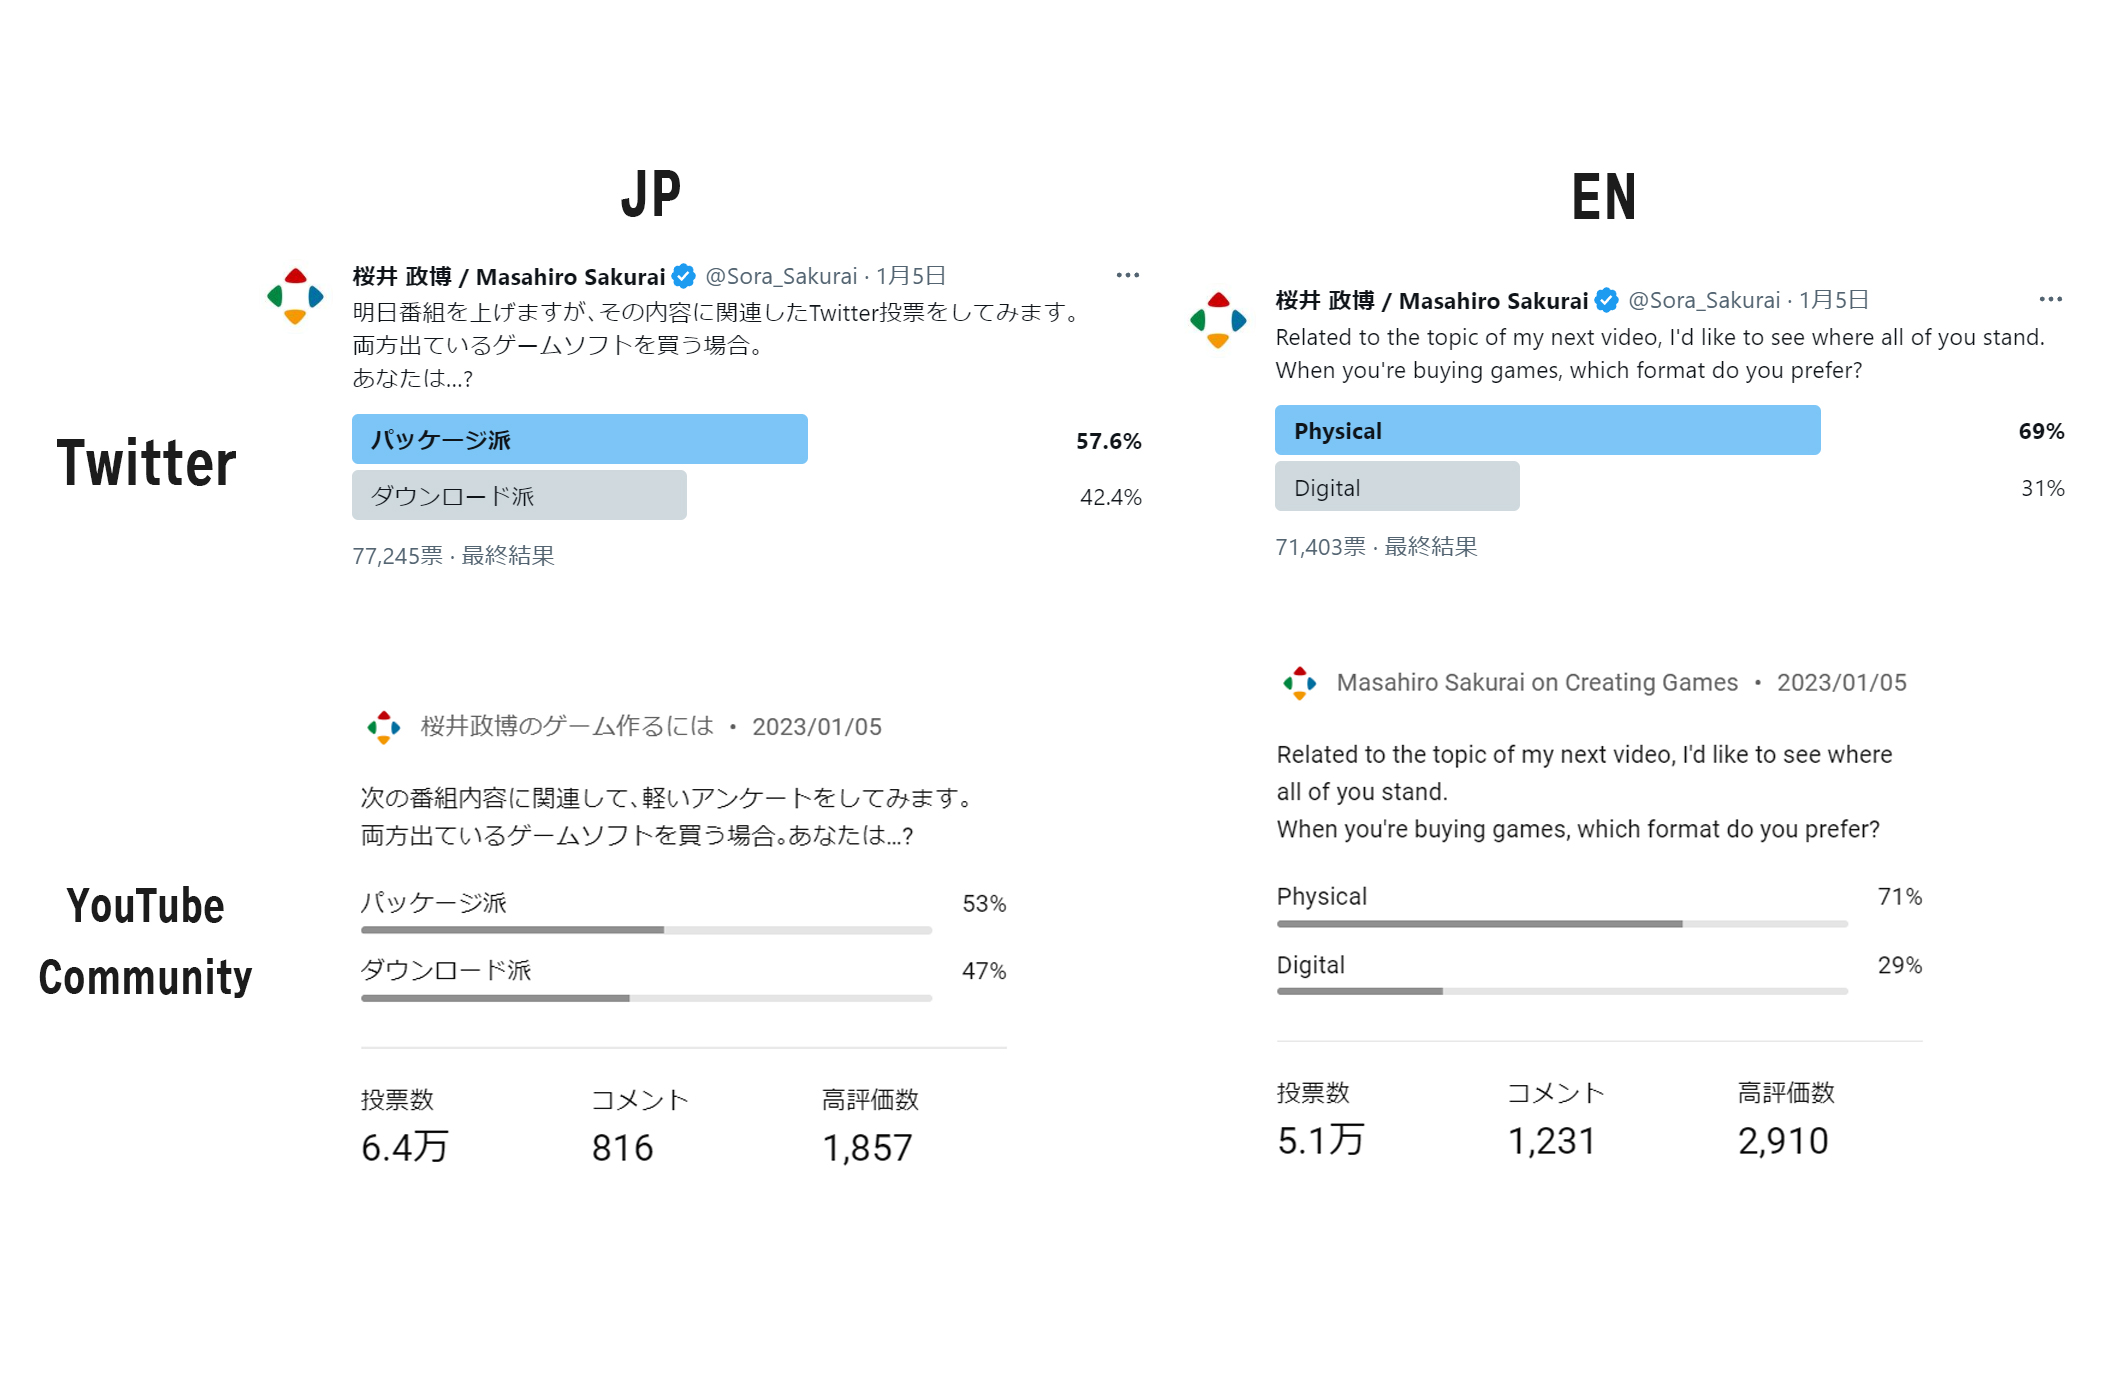 樱井政博分享在推特和YouTube进行的实体版游戏还是数字版游戏投票结果